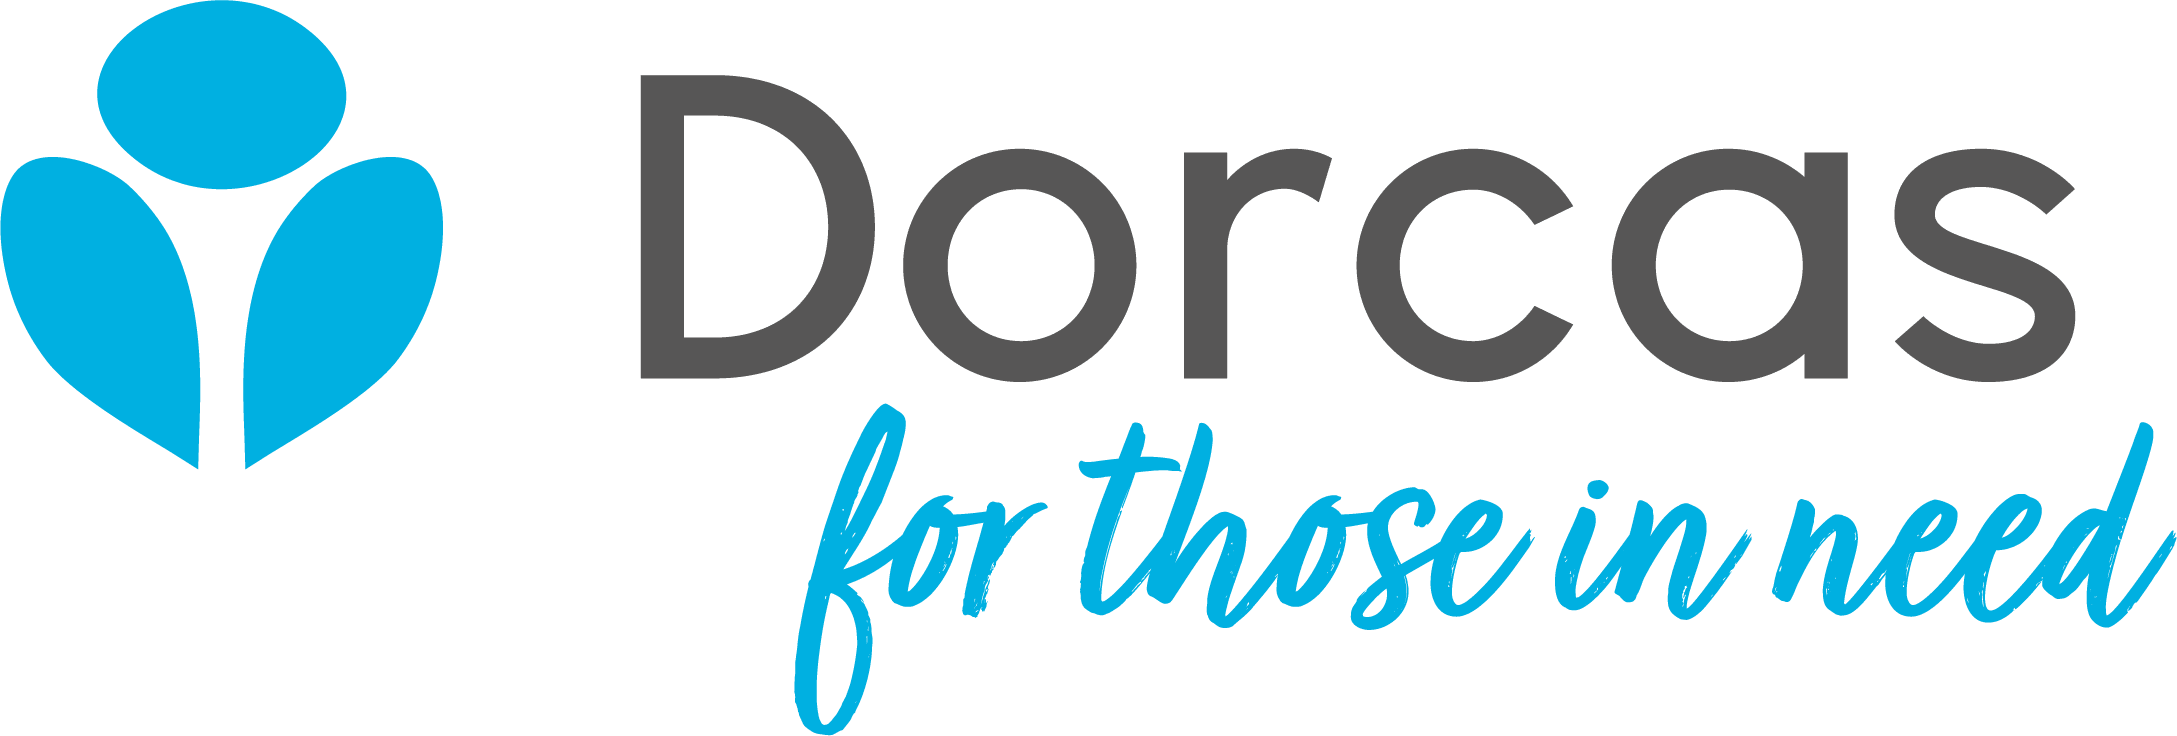   Over Dorcas Dorcas is een internationale hulp- en ontwikkelingsorganisatie, actief in 14 landen in Oost-Europa, Oost-Afrika, en het Midden-Oosten. Dorcas bestaat al ruim 40 jaar en richt zich met name op mensen in armoede, uitsluiting, of crisis.   De case Dorcas zag in de afgelopen 5 jaar een lichte doch stabiele trend in de […]